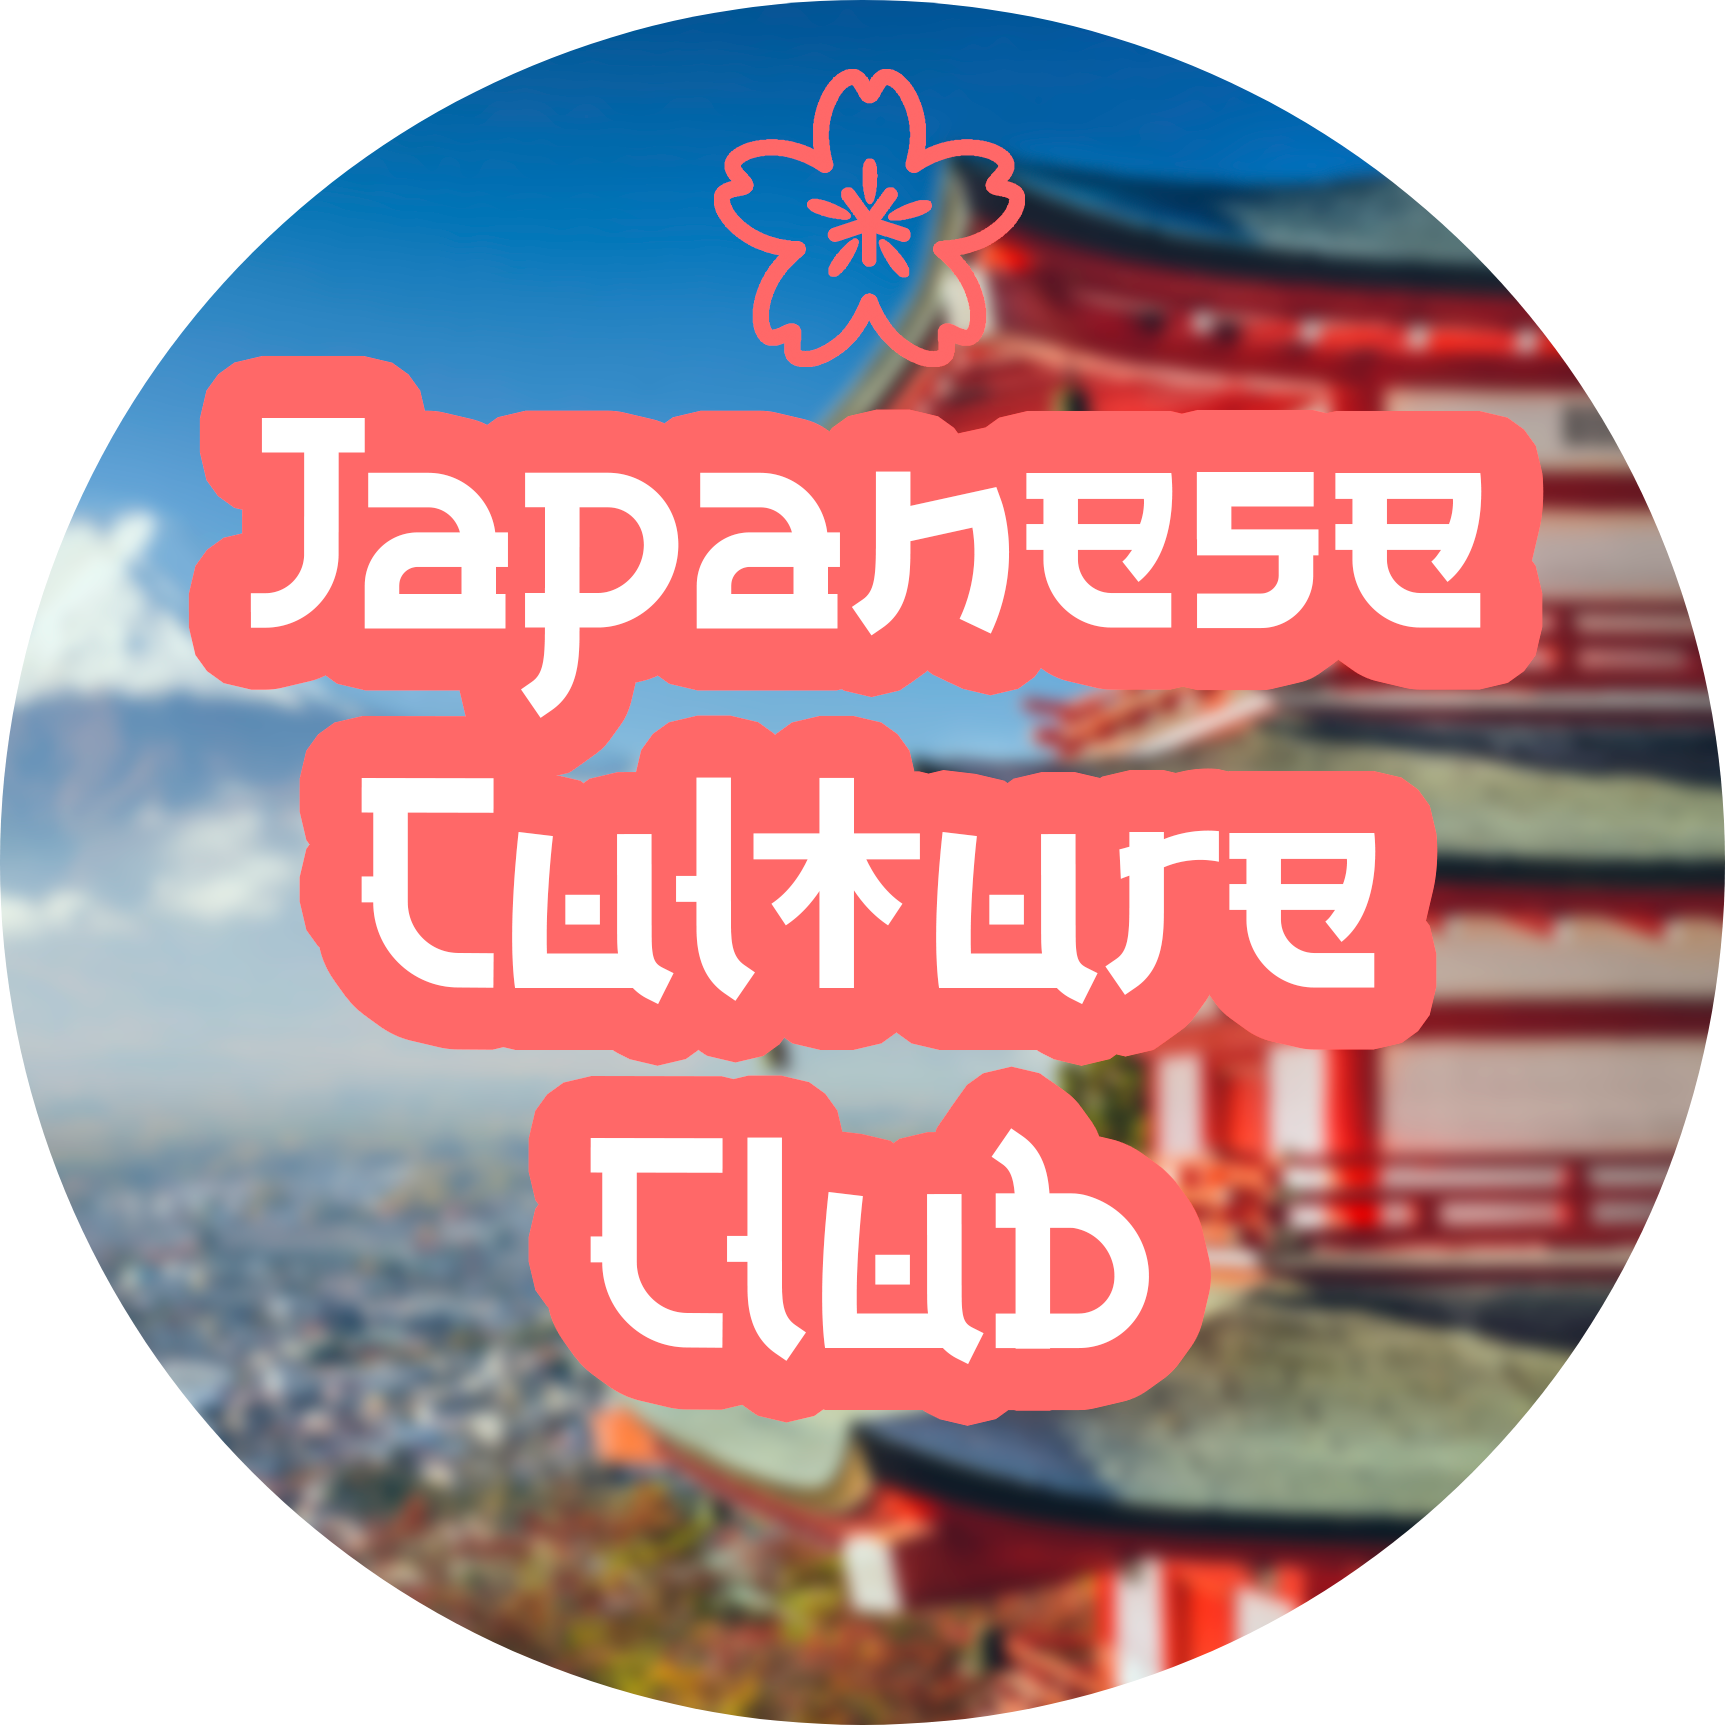 იაპონური კულტურის კლუბი კინოს ჩვენება